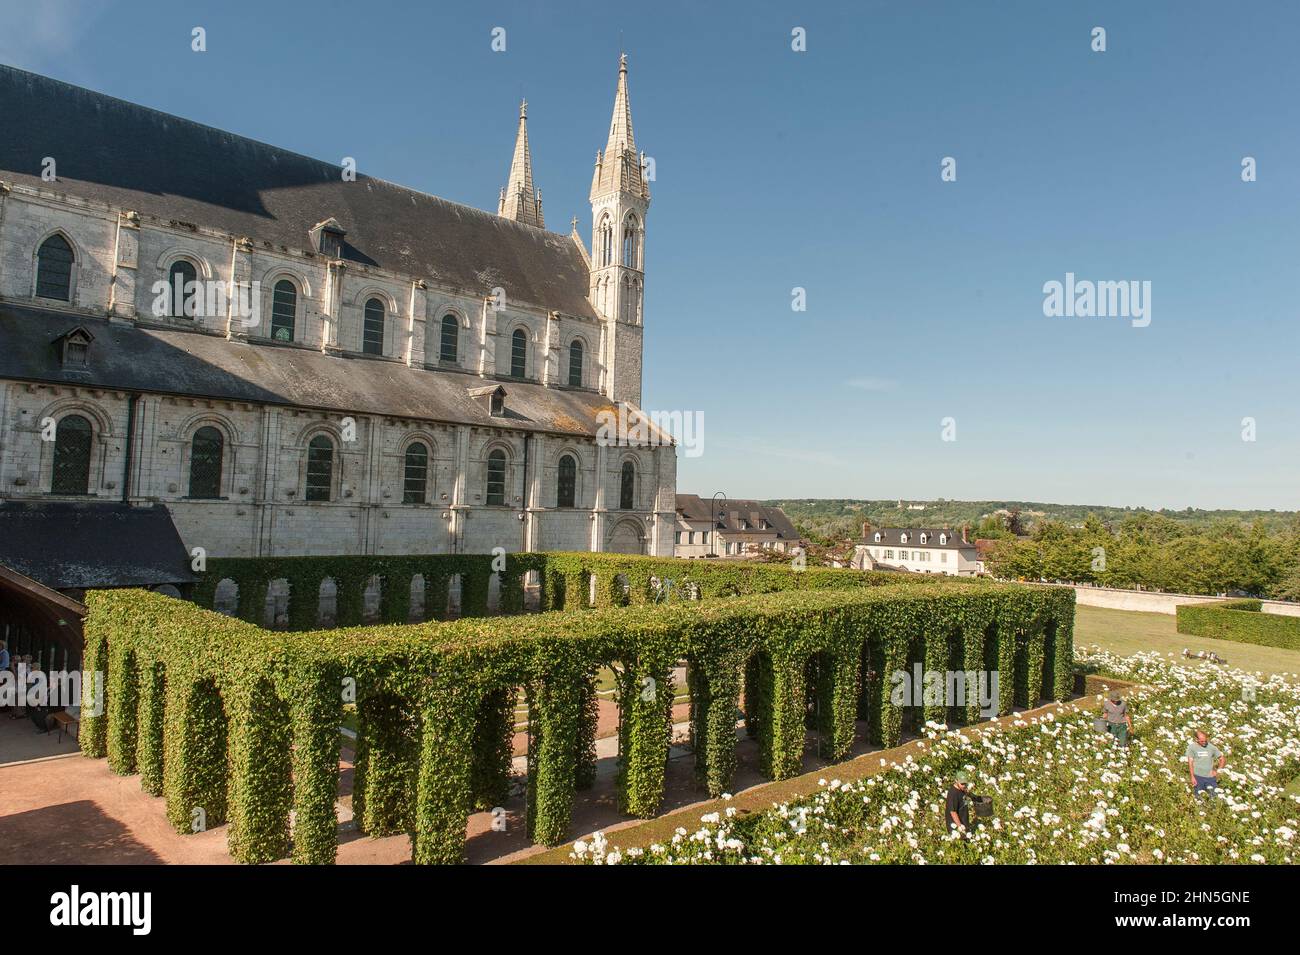 L'abbaye de Saint-Georges-de-Boscherville a été fondée par des moines bénédictins à Saint-Martin-de-Boscherville près de Rouen, Normandie, France Banque D'Images